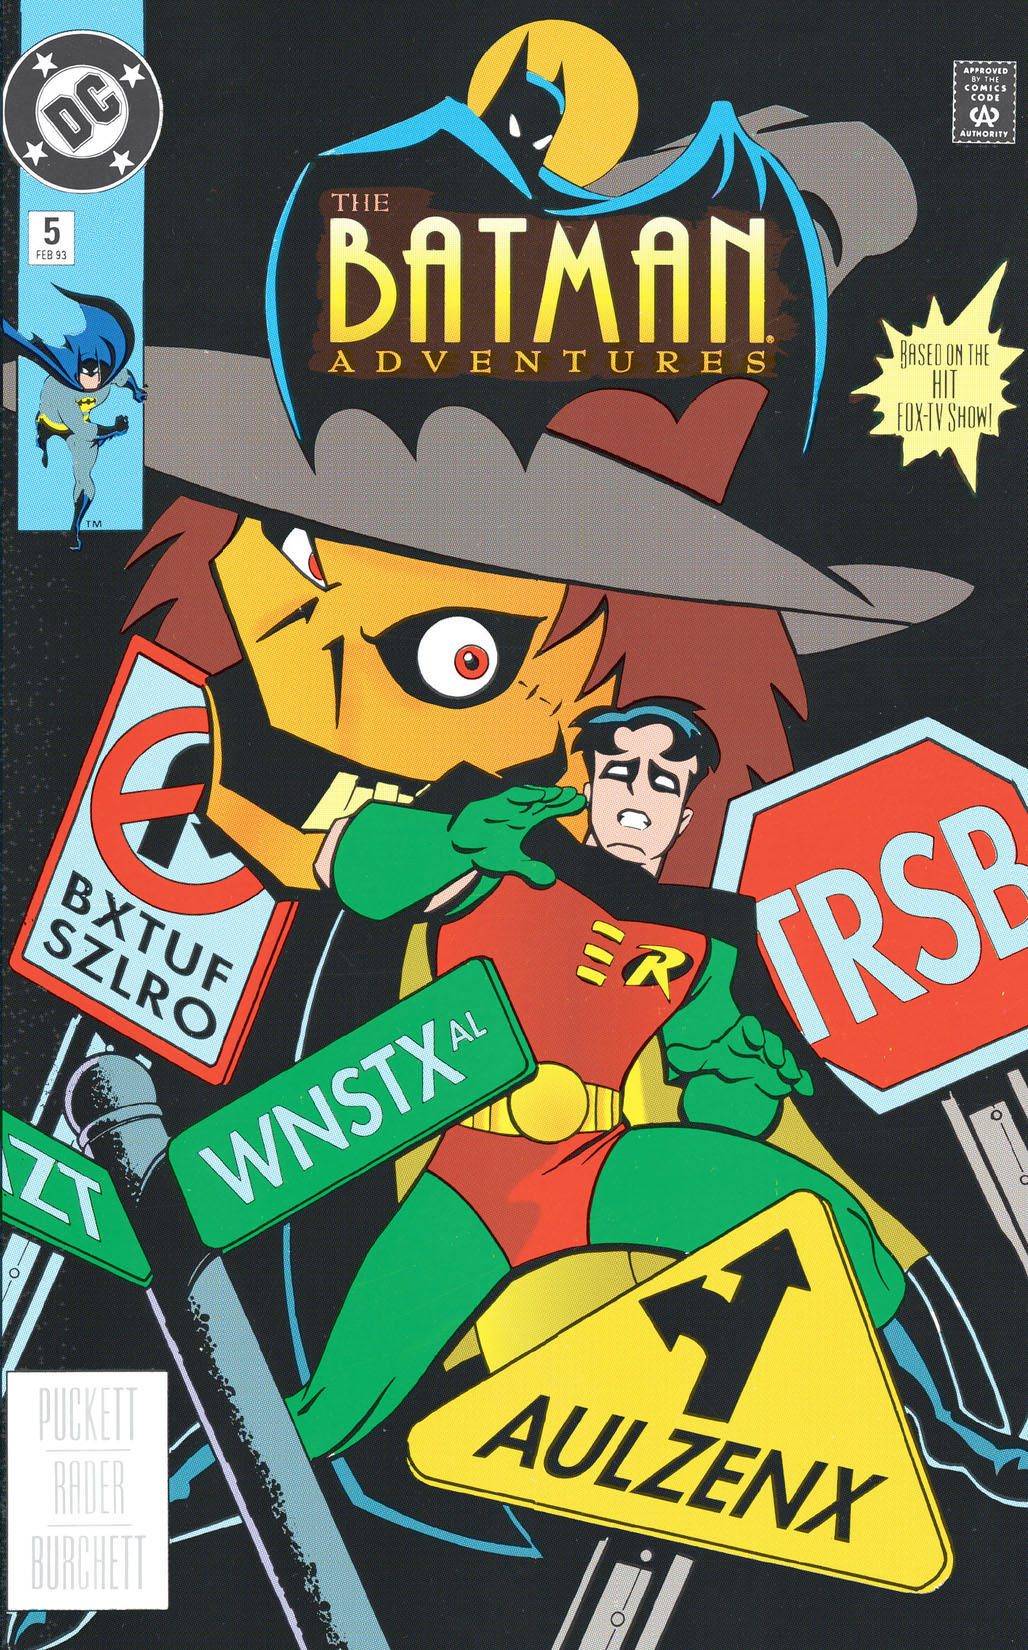 The Batman Adventures #5 preview images